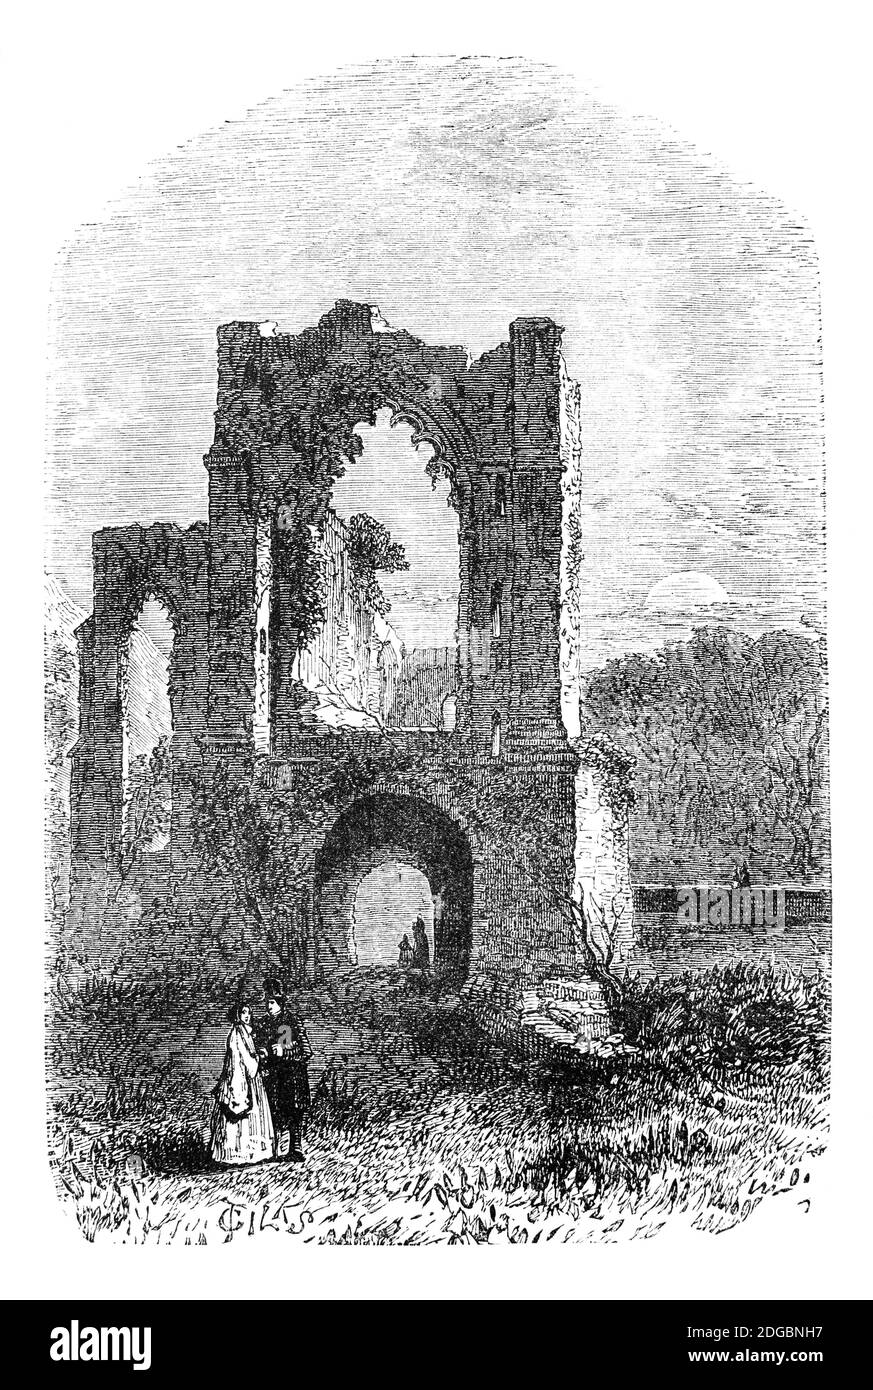 Una vista de finales del siglo XIX de la abadía de Furness gótica  arruinada, cerca de Barrow-in-Furness, Cumbria, Inglaterra fundada en 1123.  Se convirtió en el segundo monasterio cisterciense más rico y